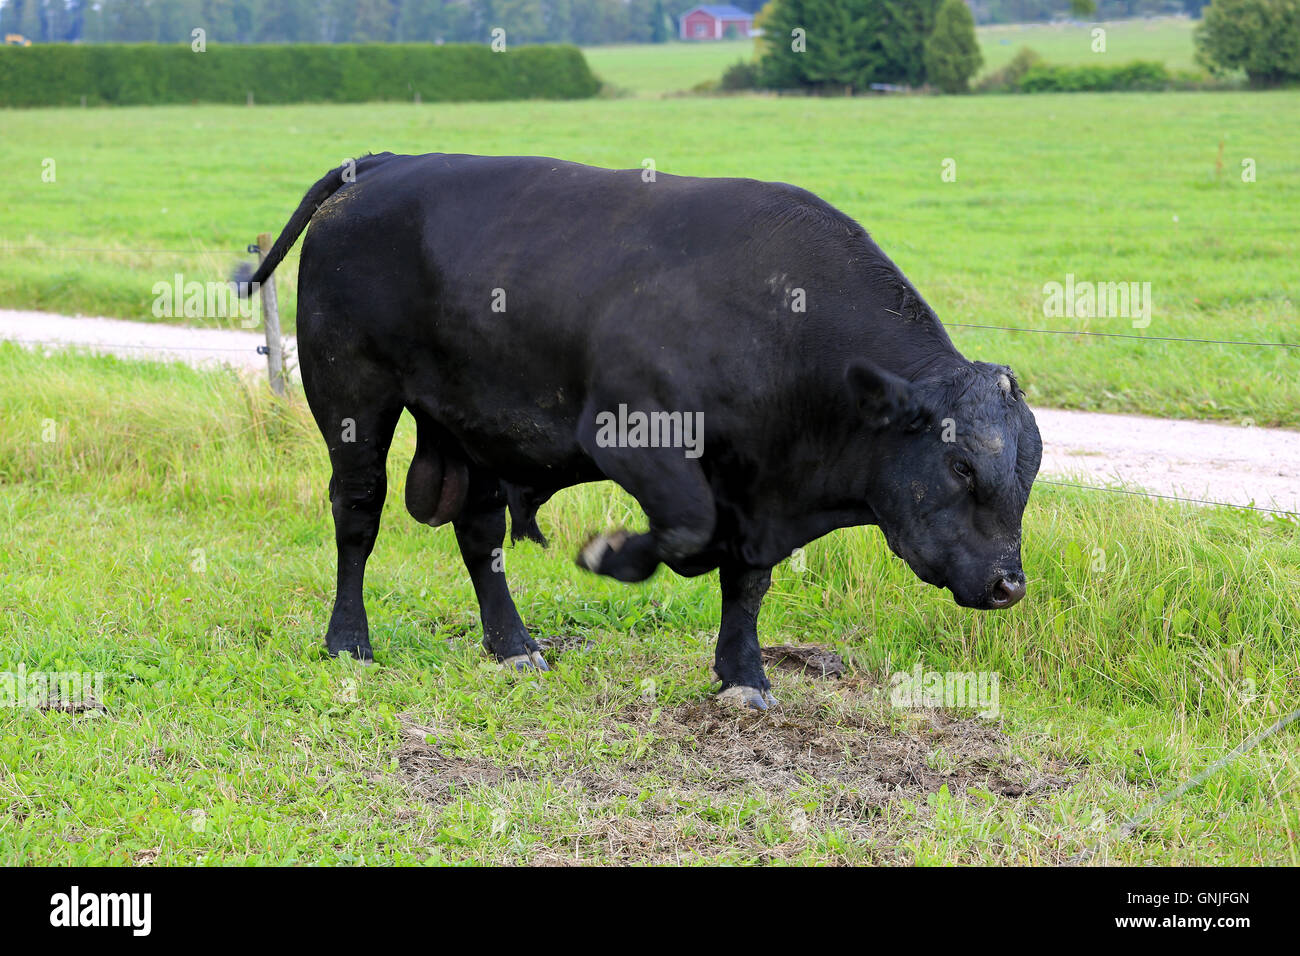 Aberdeen Angus en colère noire de patte de Bull sur un champ, la tête en bas, une menace pour les taureaux. typique d'affichage Banque D'Images